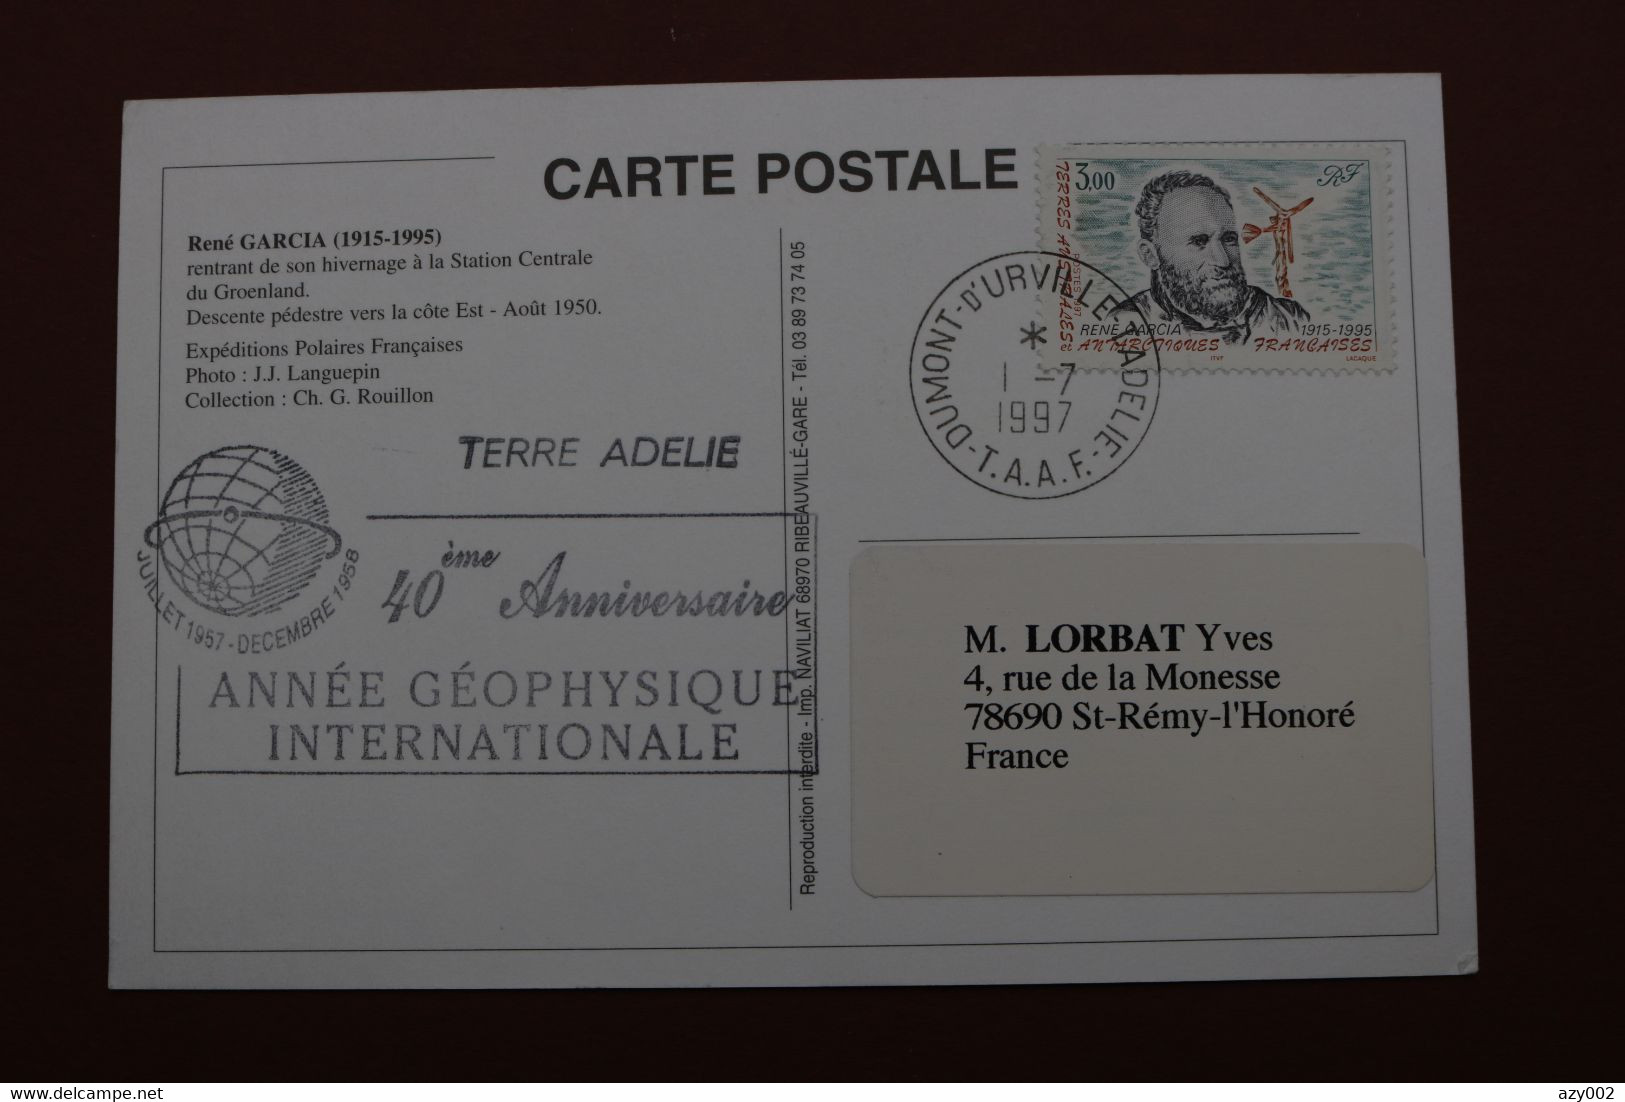 Carte Postale De René Garcia TAAF 1997 Avec Timbre 216 : Cachet 40ème Anniversaire Année Géophysique Internationale. - Other & Unclassified